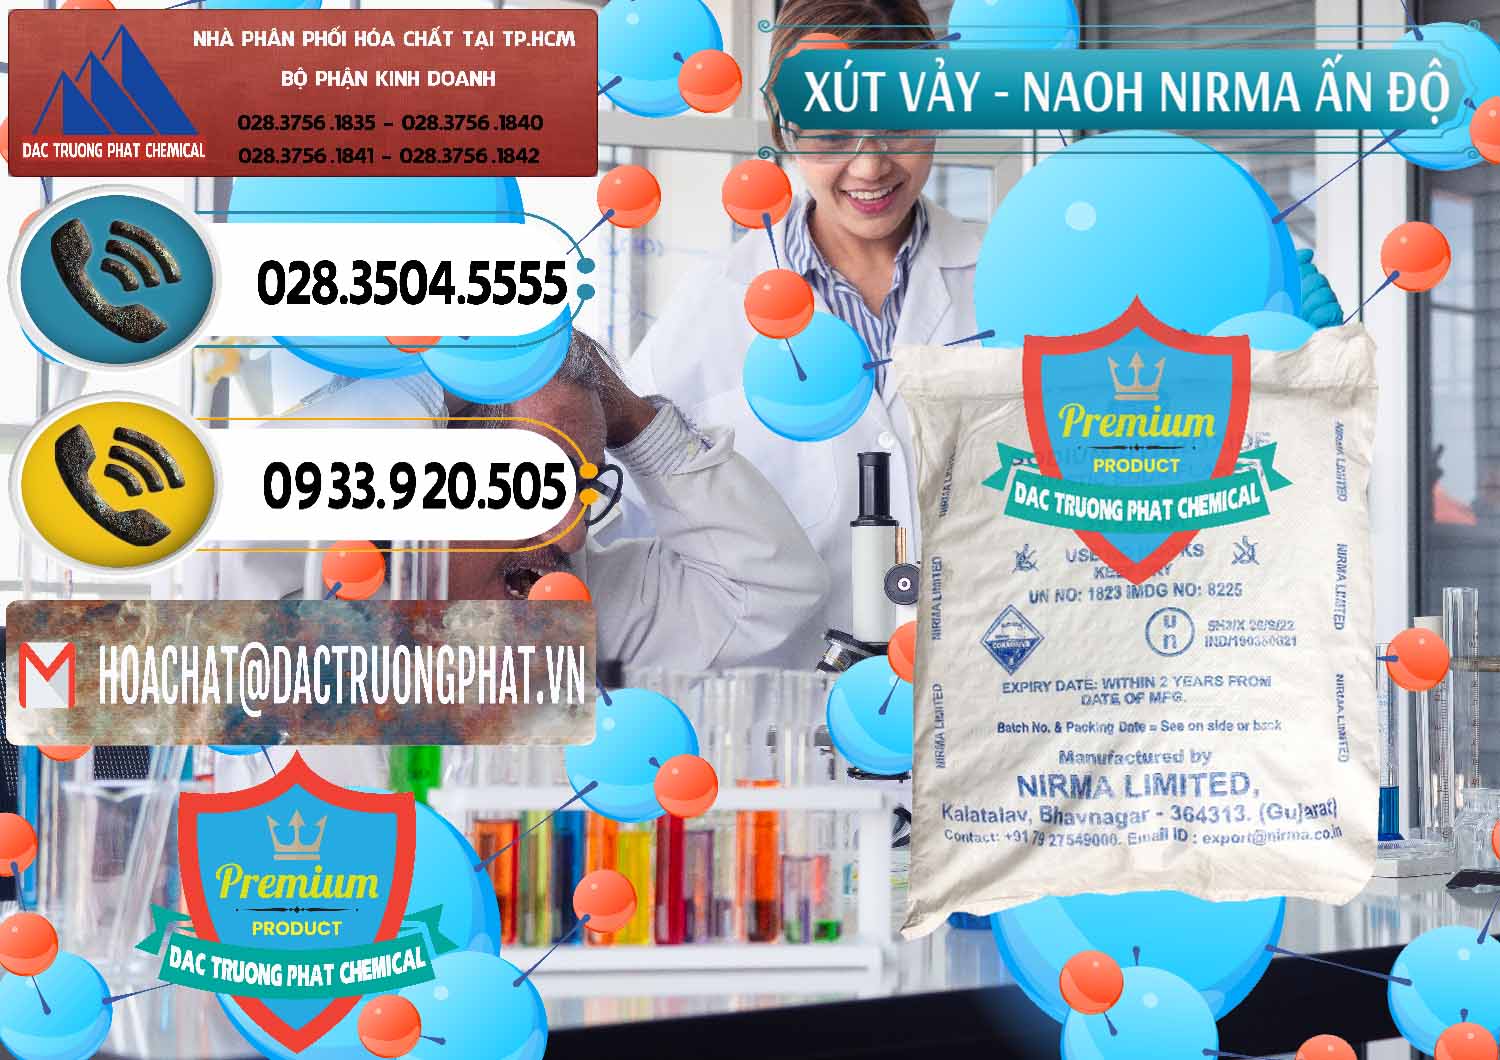 Chuyên bán & cung cấp Xút Vảy - NaOH Vảy Nirma Ấn Độ India - 0371 - Công ty chuyên bán và cung cấp hóa chất tại TP.HCM - hoachatdetnhuom.vn